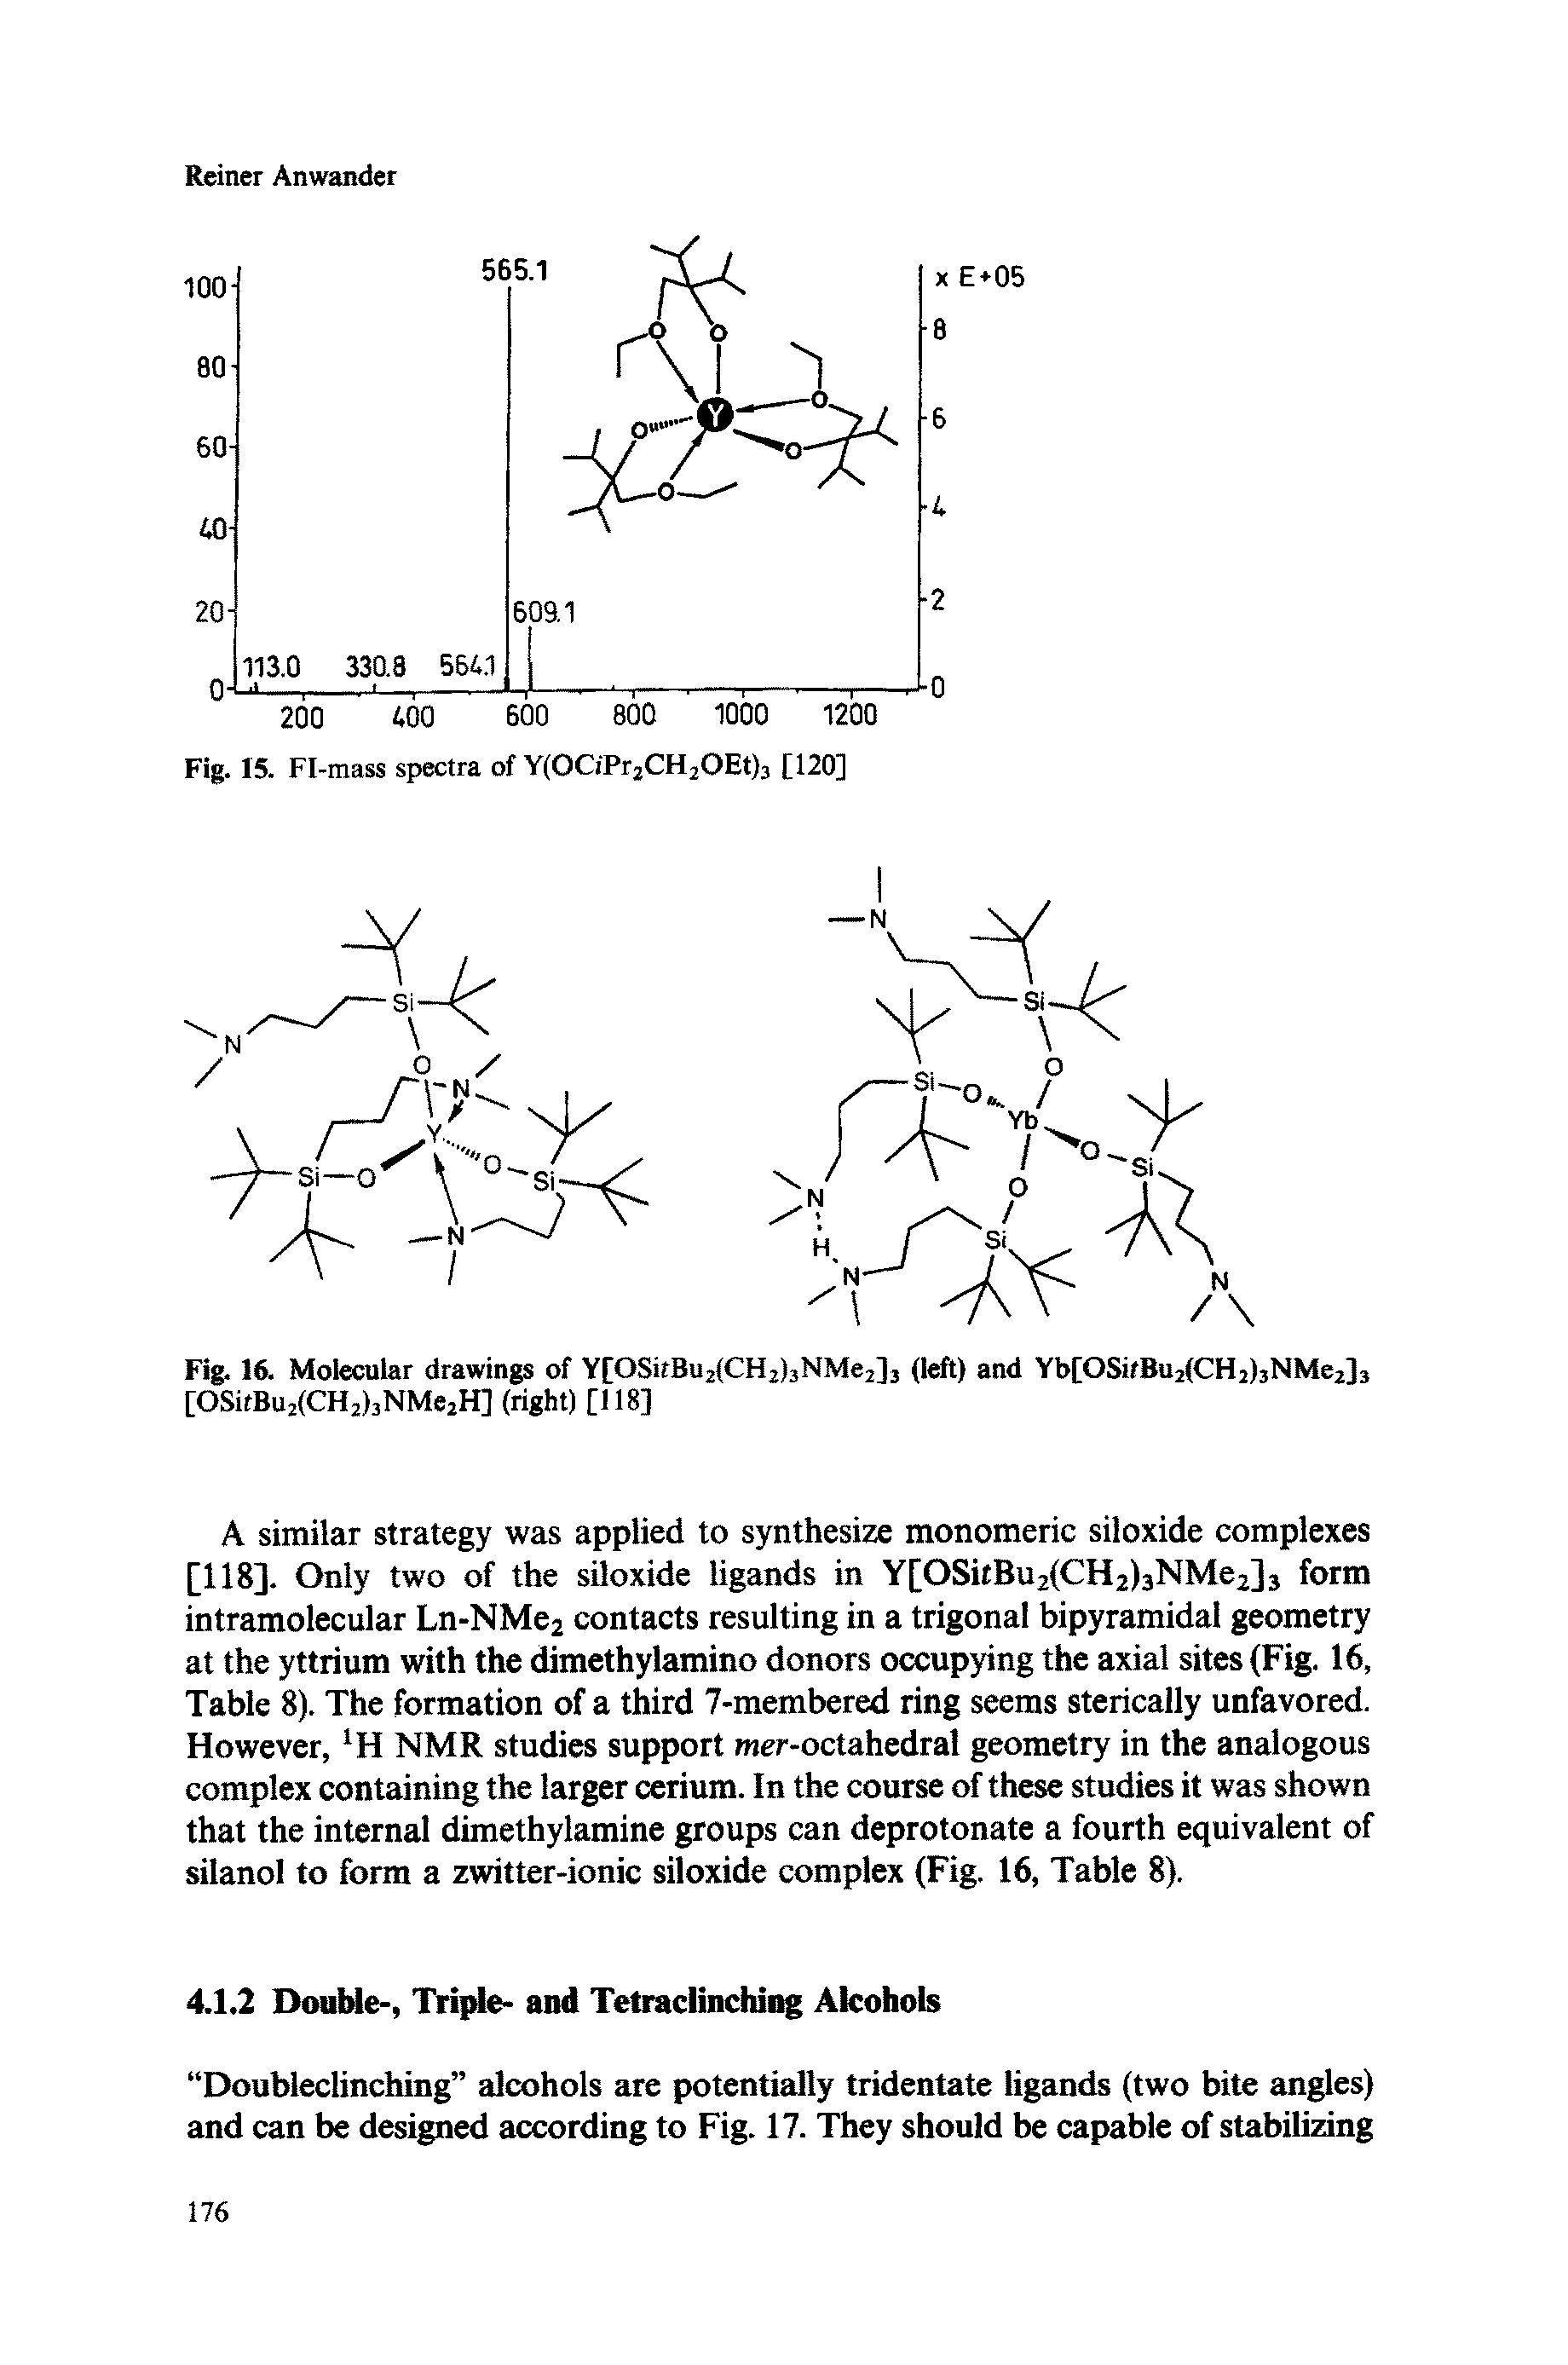 Fig. 16. Molecular drawings of Y[OSifBu2(CH2)3NMe2]3 (left) and Yb[OSi/Bu2(CH2)3NMe2]3 [OSitBu2(CH2)3NMe2H] (right) [118]...